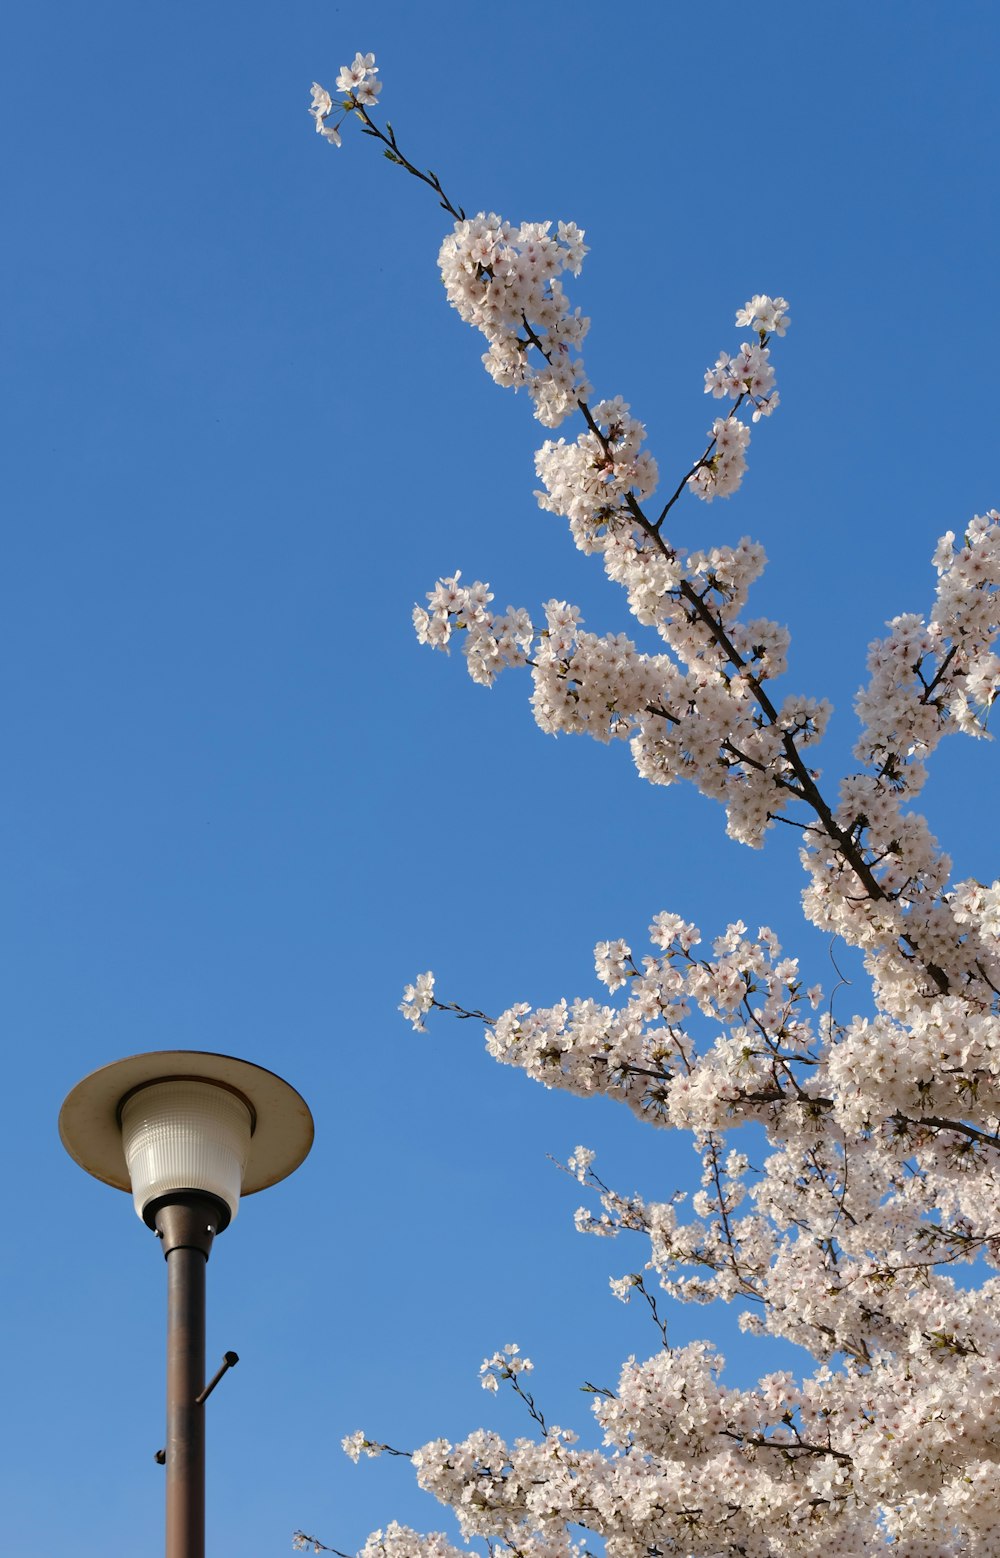 un poste de luz y un árbol en flor contra un cielo azul